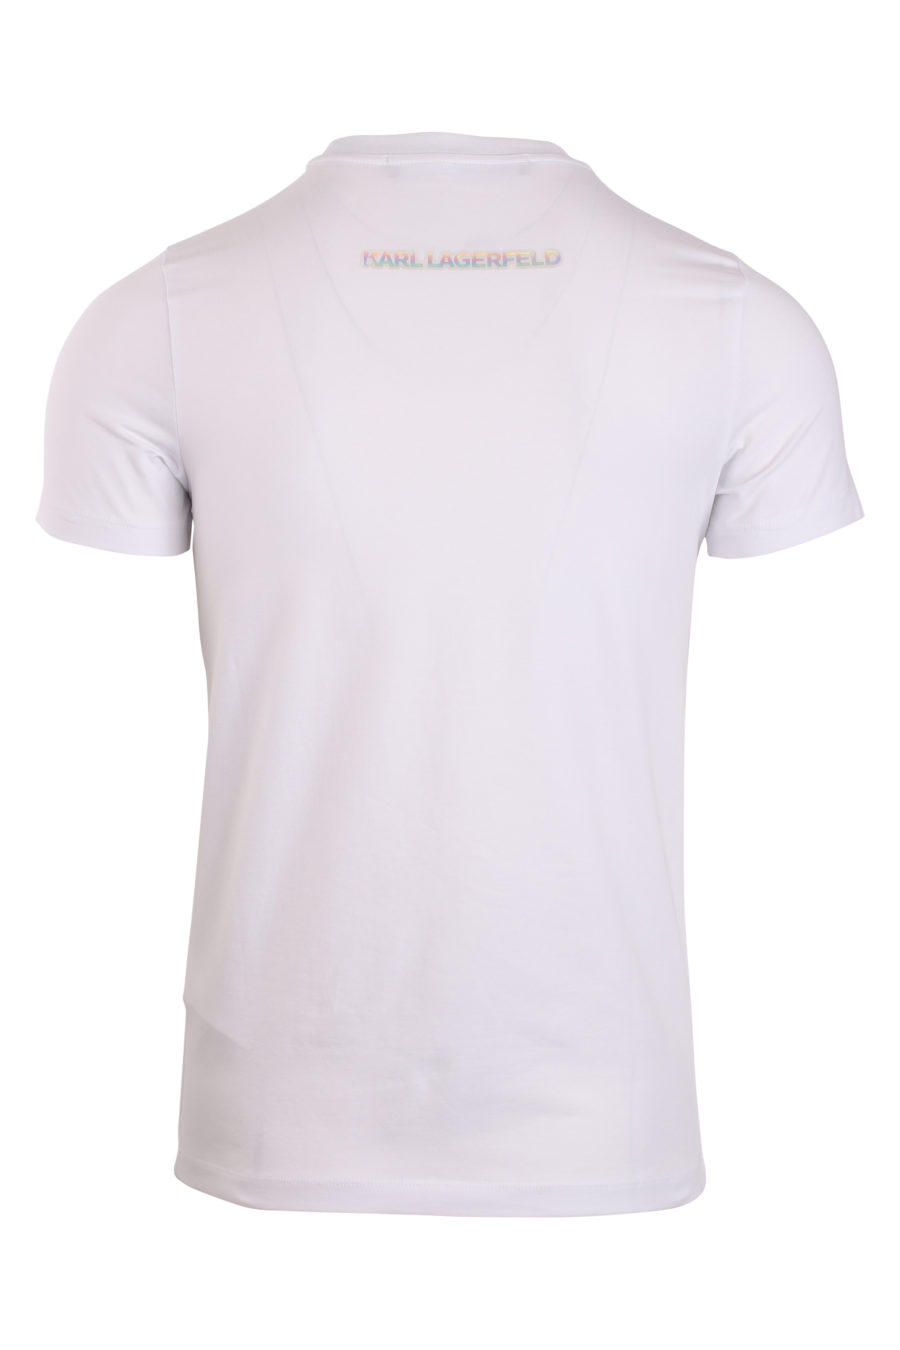 Weißes T-Shirt mit Logo in kleiner Lacksilhouette - IMG 0865